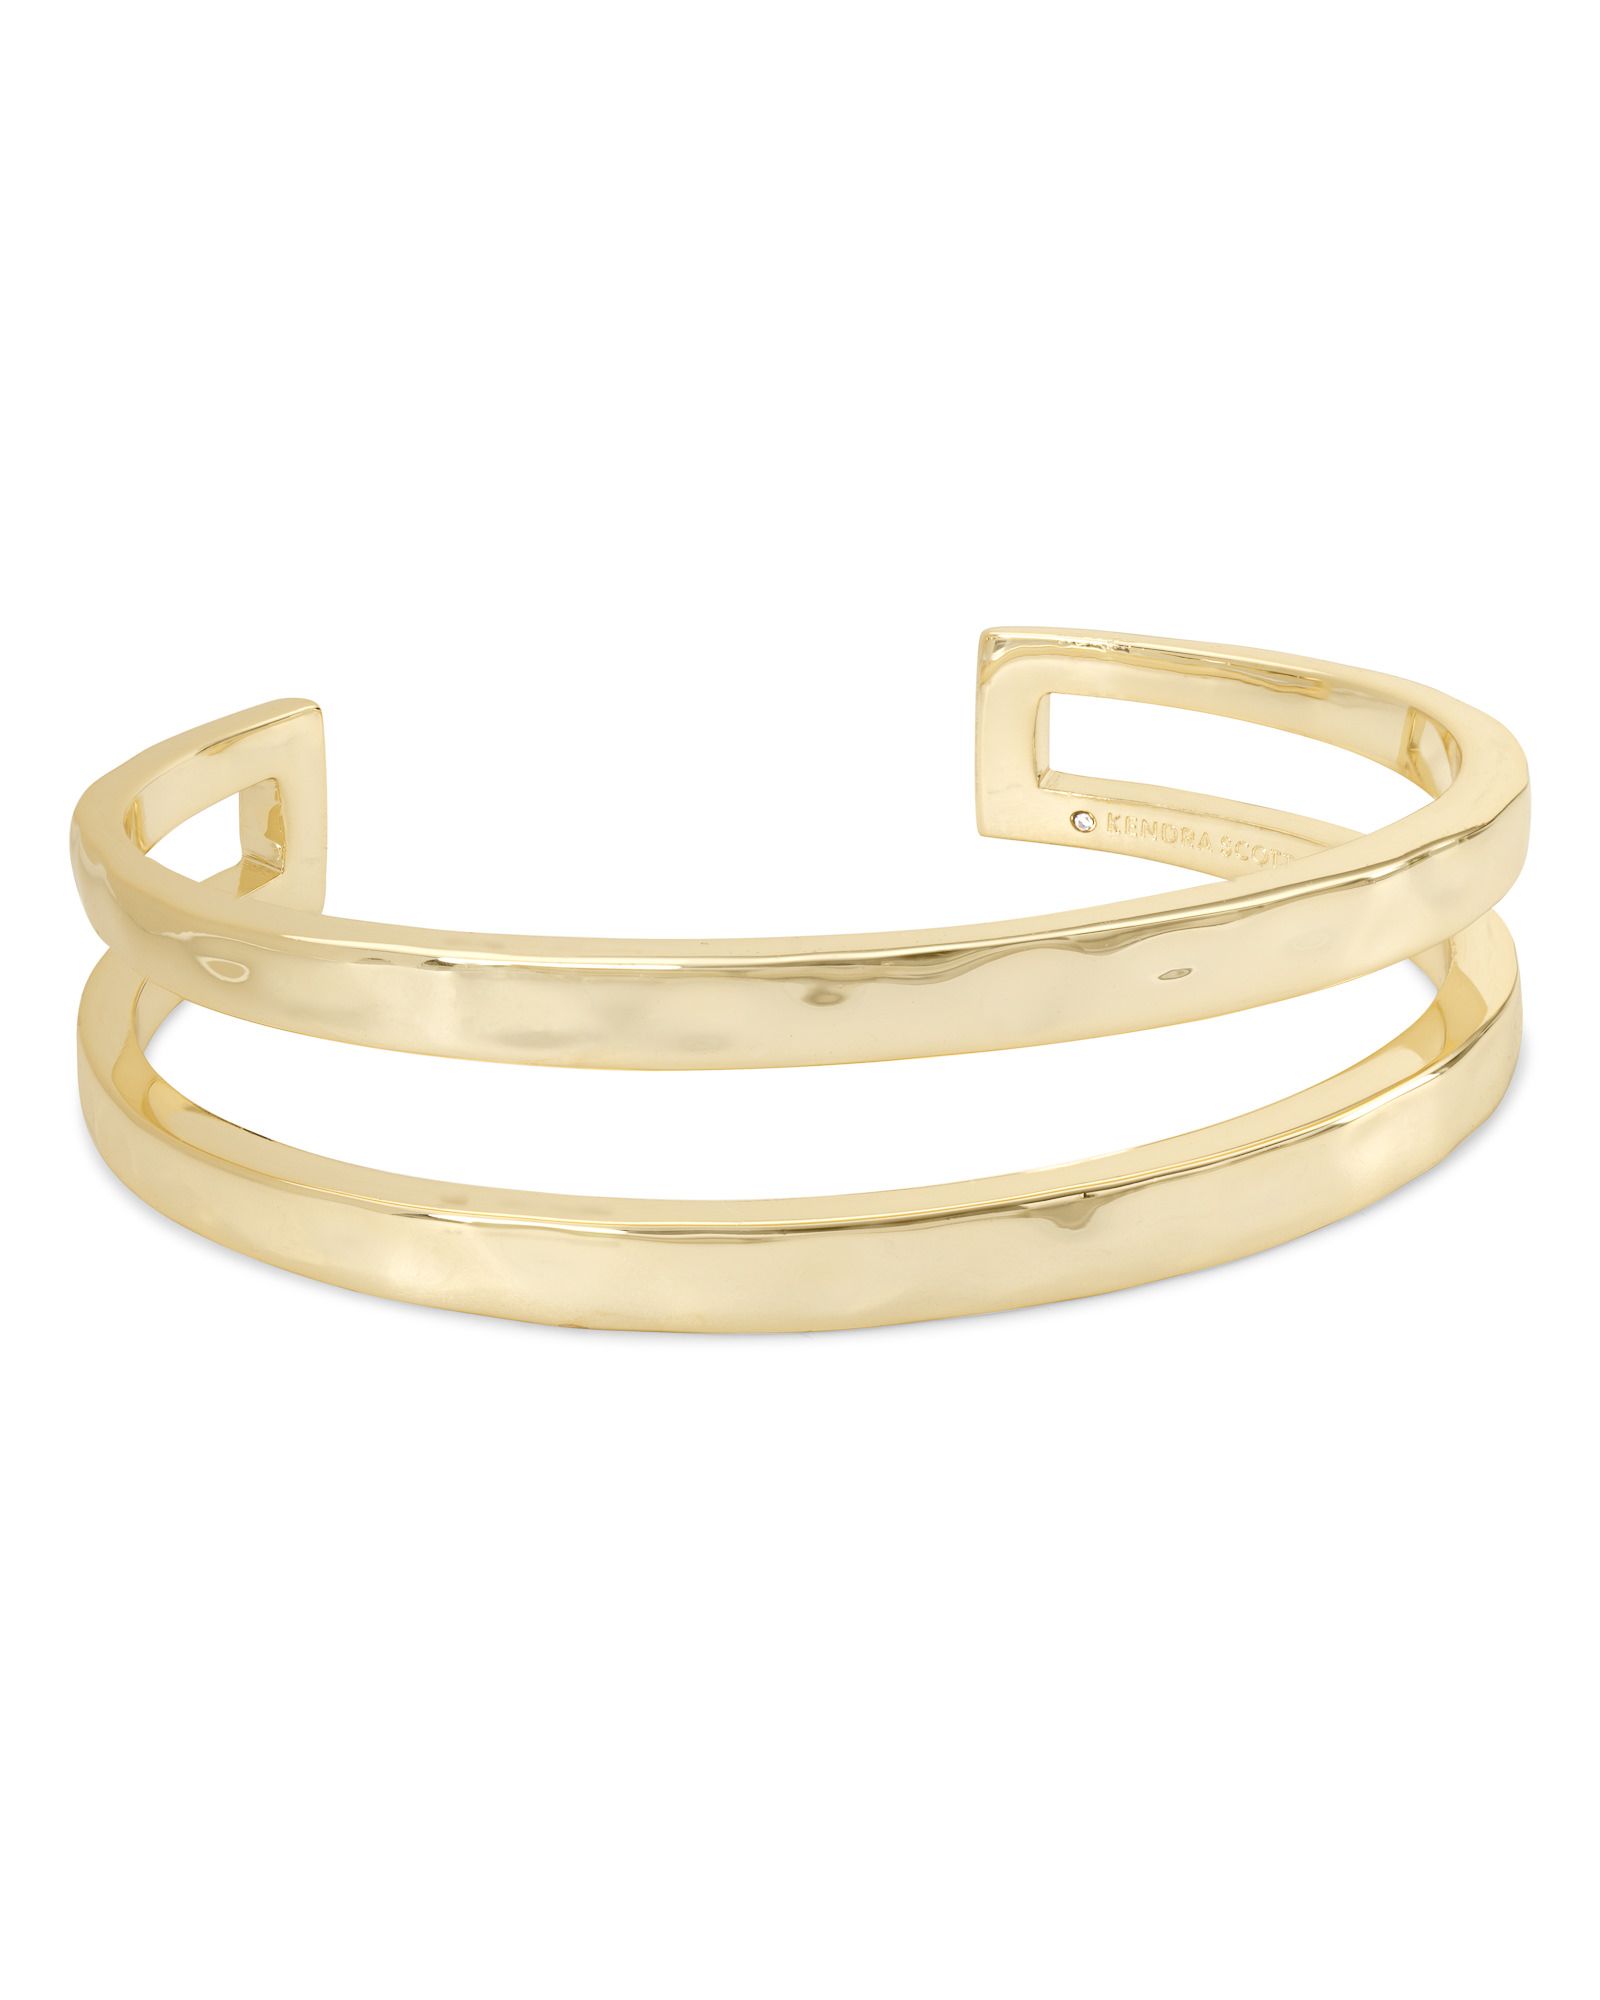 Zorte Cuff Bracelet in Gold - L | Kendra Scott